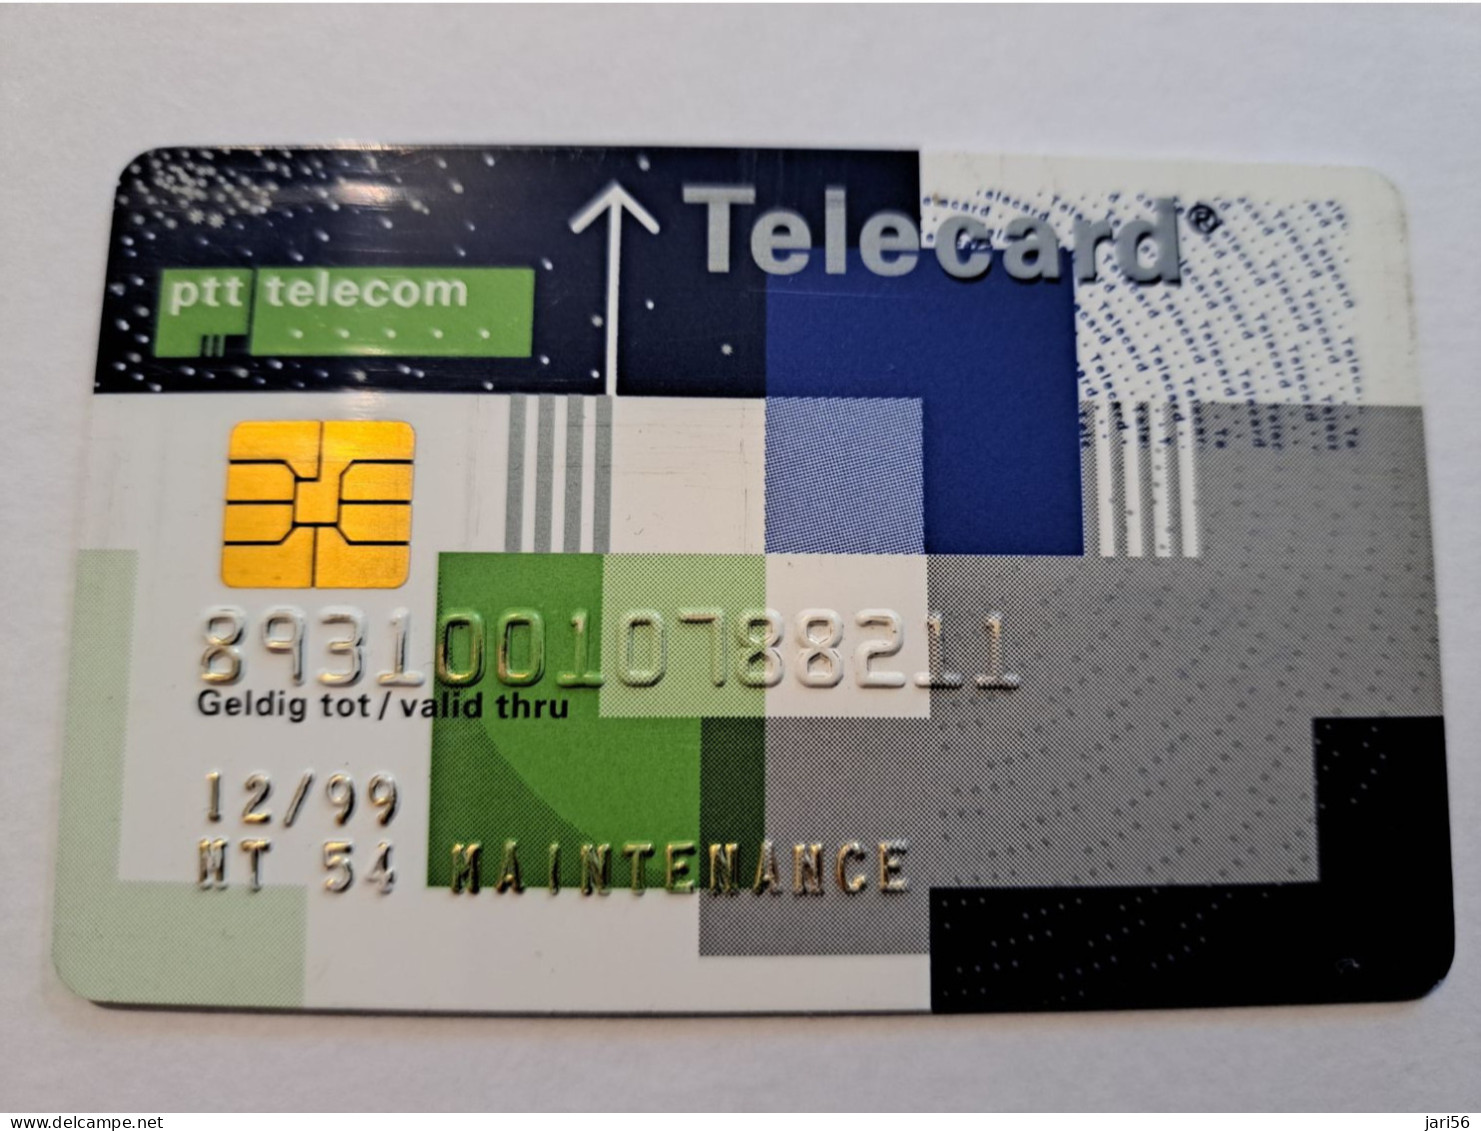 NETHERLANDS  /CHIPCARD/ MAINTENANCE  PTT TELECOM/TELECARD/ VERY RARE !!  / DATE 12/99   ** 16305** - Test & Dienst